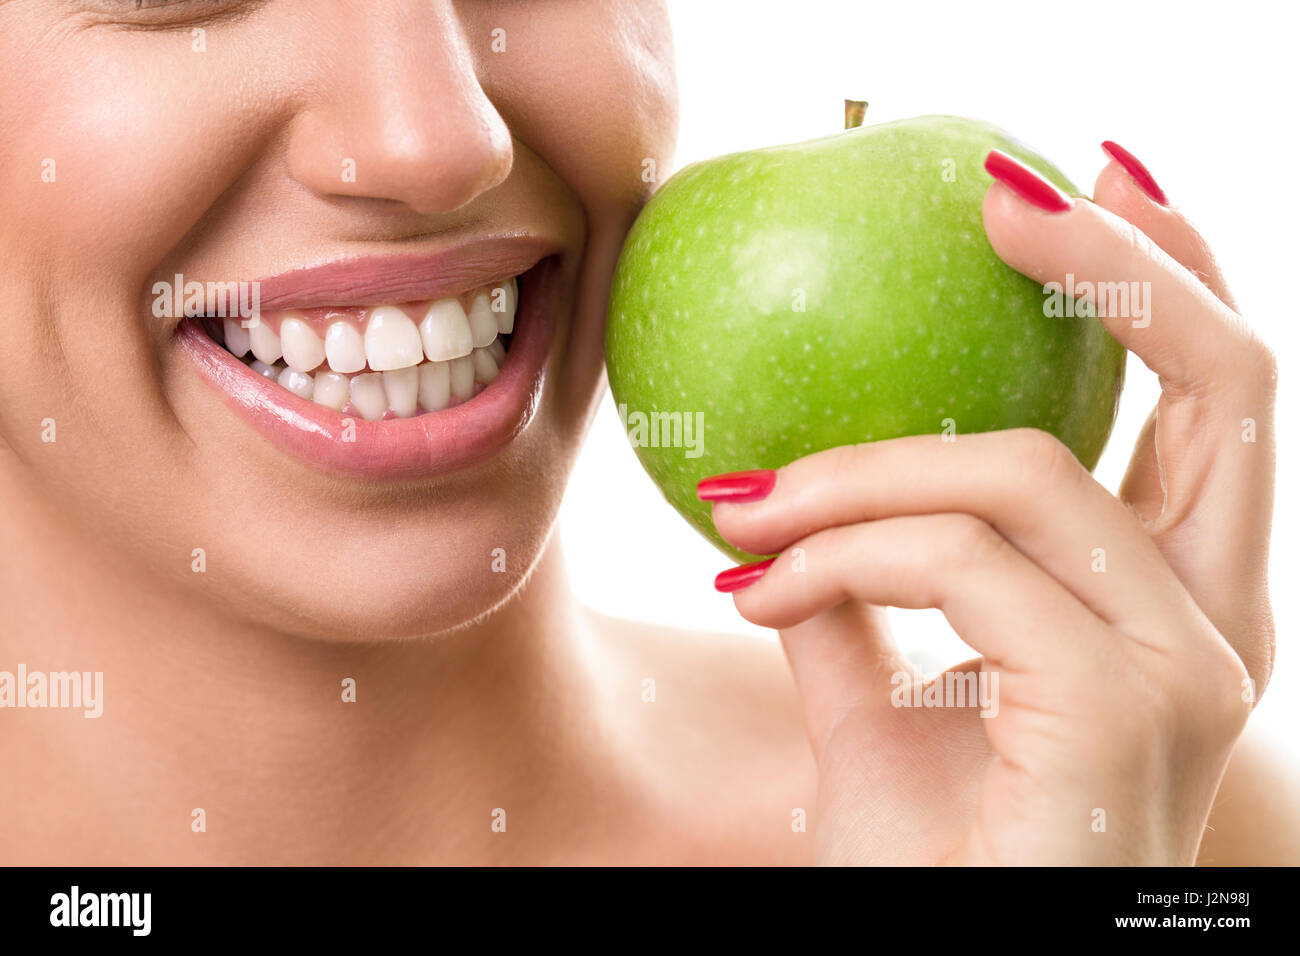 Sourire parfait avec la pomme verte, propre, sain concept des dents blanches Banque D'Images